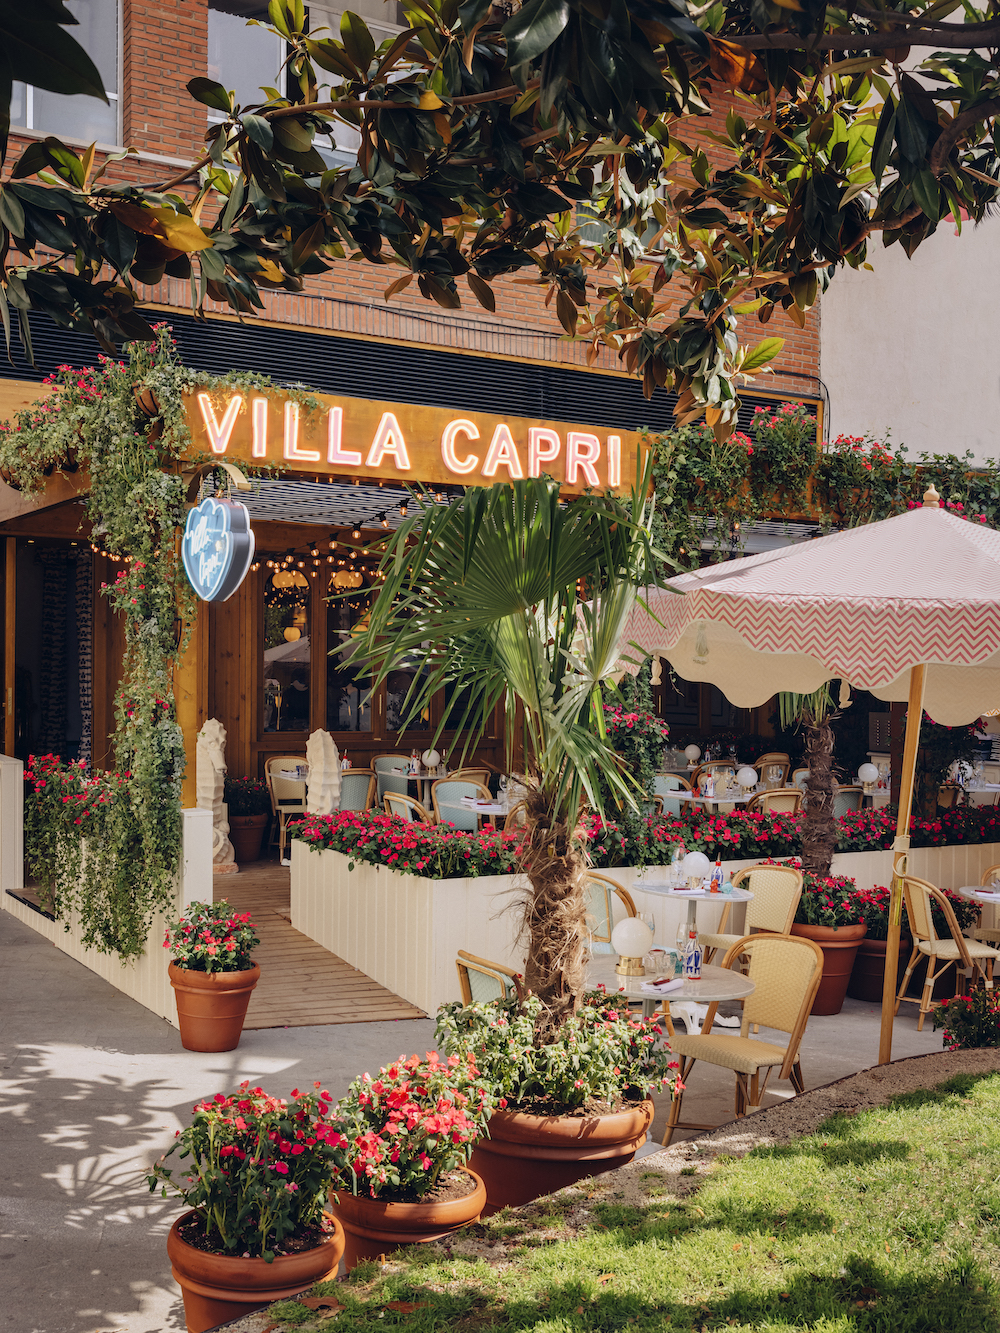 imagen 19 de Villa Capri, los aromas y sabores de la Costa Amalfitana en Madrid.